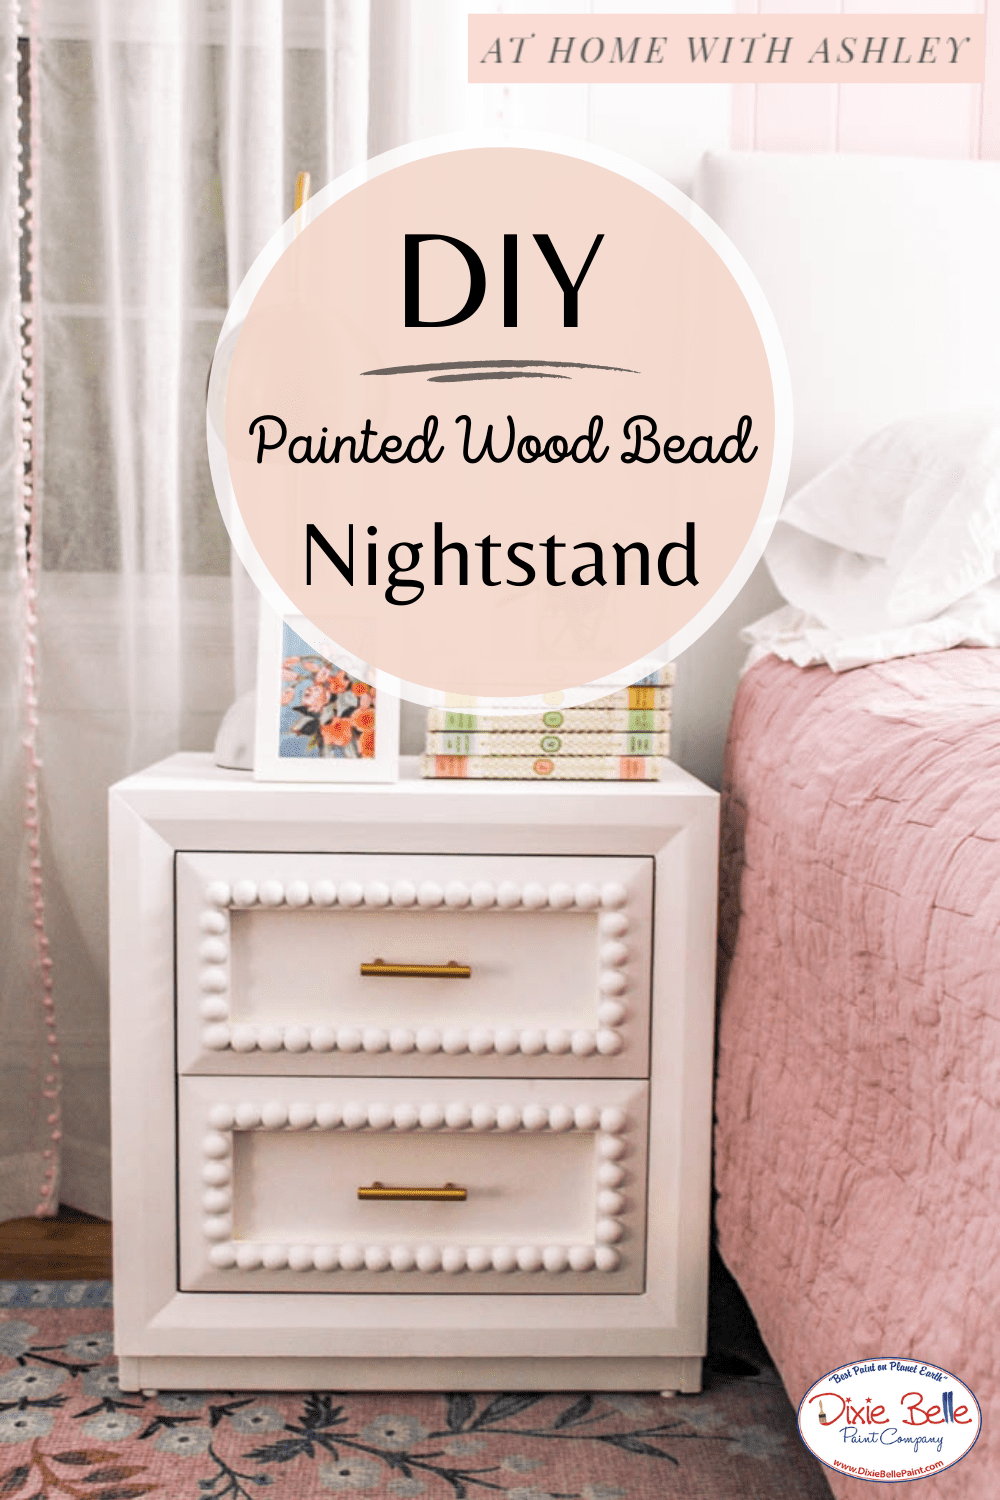 DIY Painted Wood Bead Nightstand